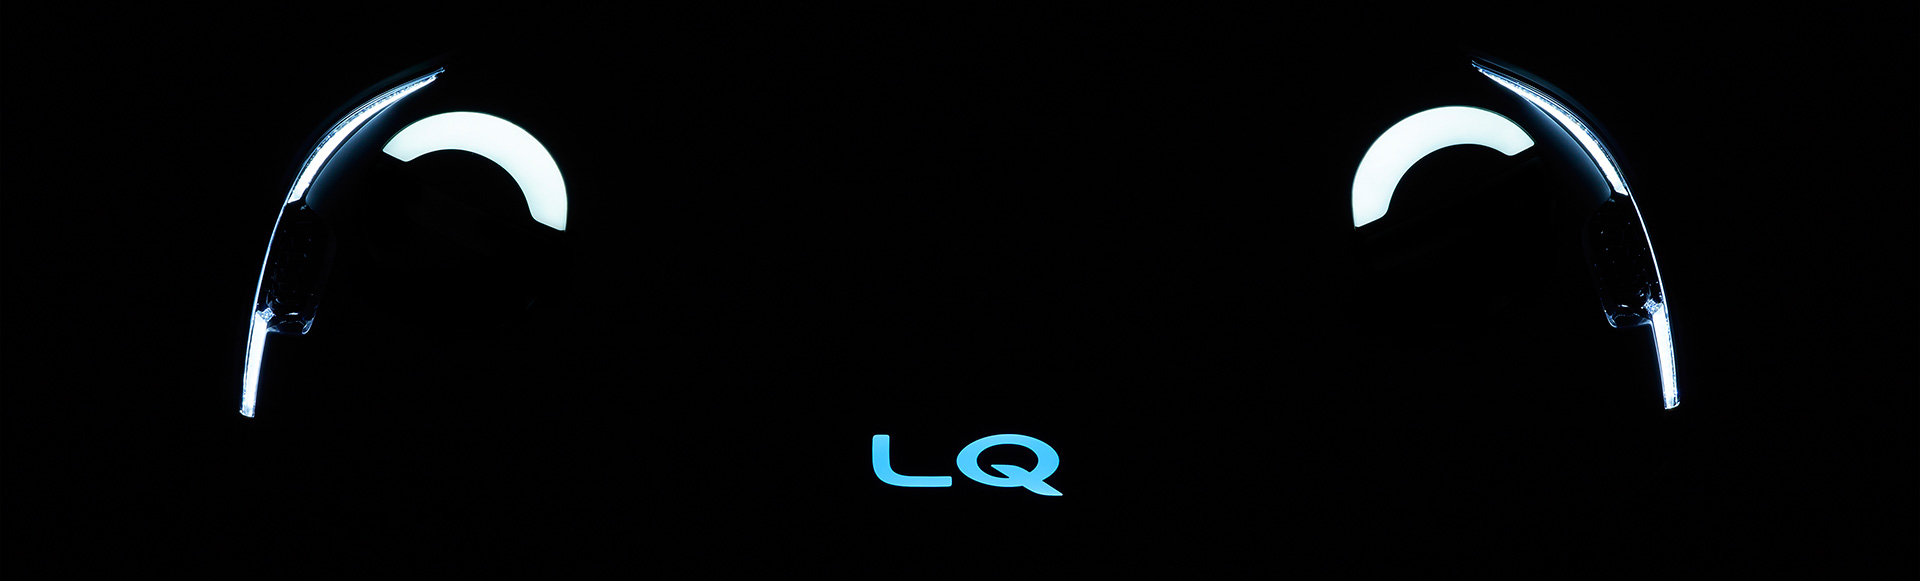 トヨタ自動車､「新しい時代の愛車」を具現化した「LQ」を公表